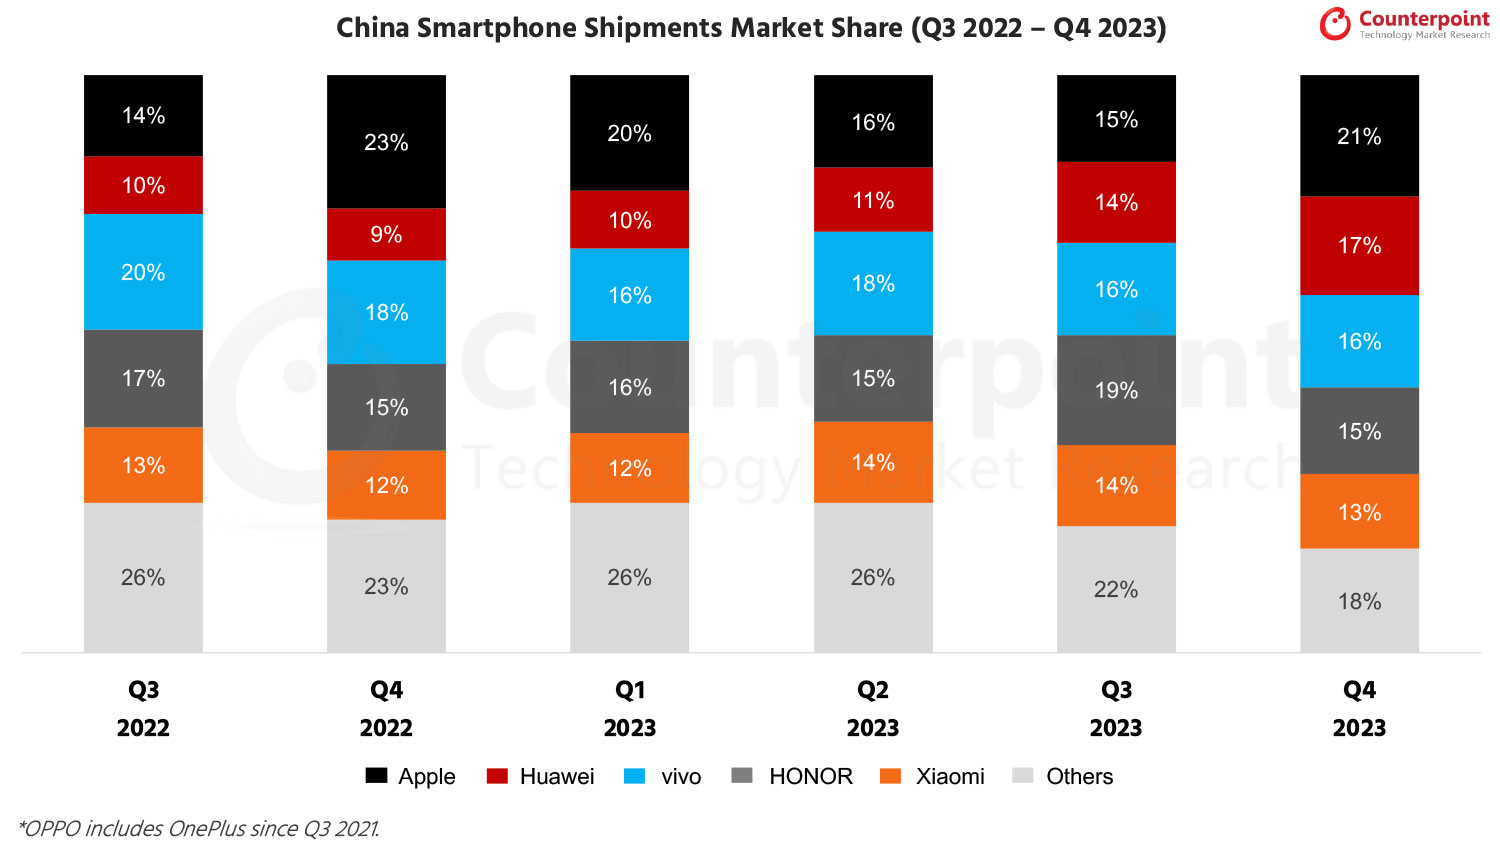 China-Smartphone-Market-Share-Q4-2023